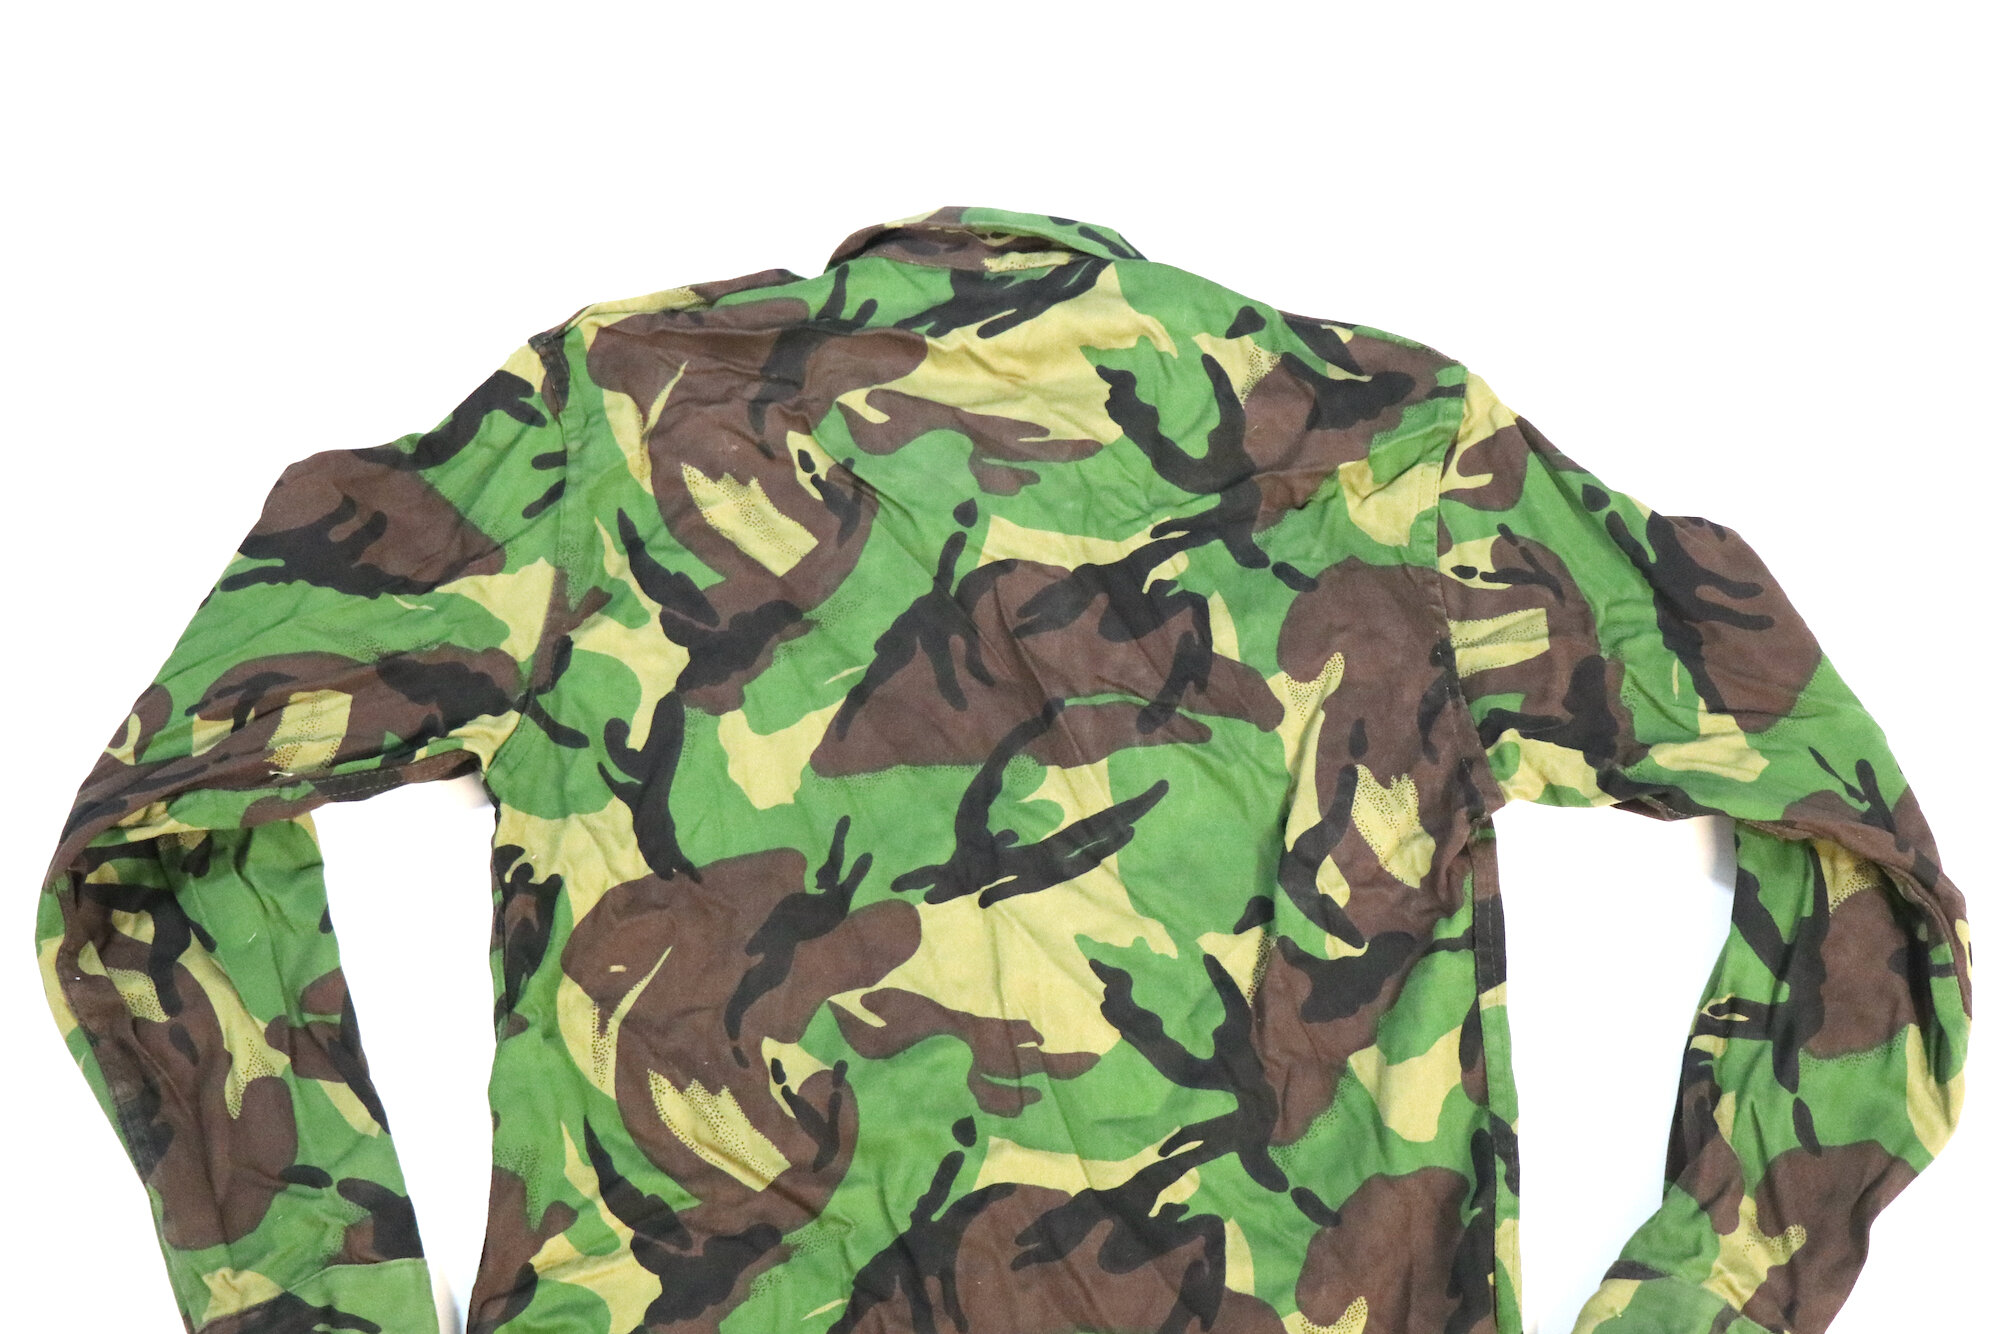 Iraqi DPM Camouflage Jacket — Iraqi Militaria